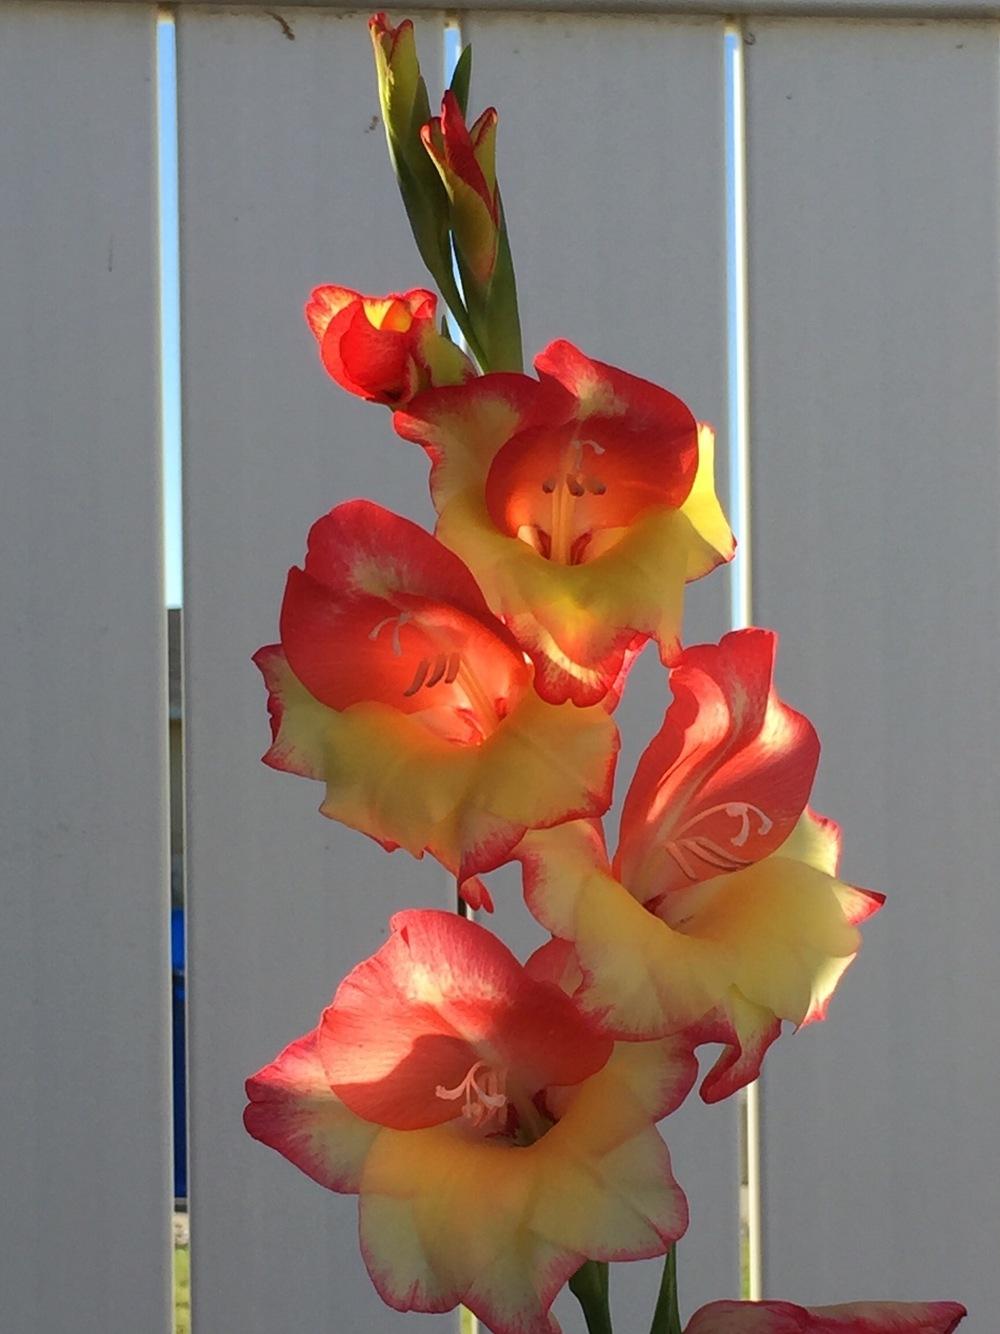 Photo of Gladiola (Gladiolus) uploaded by stakata55